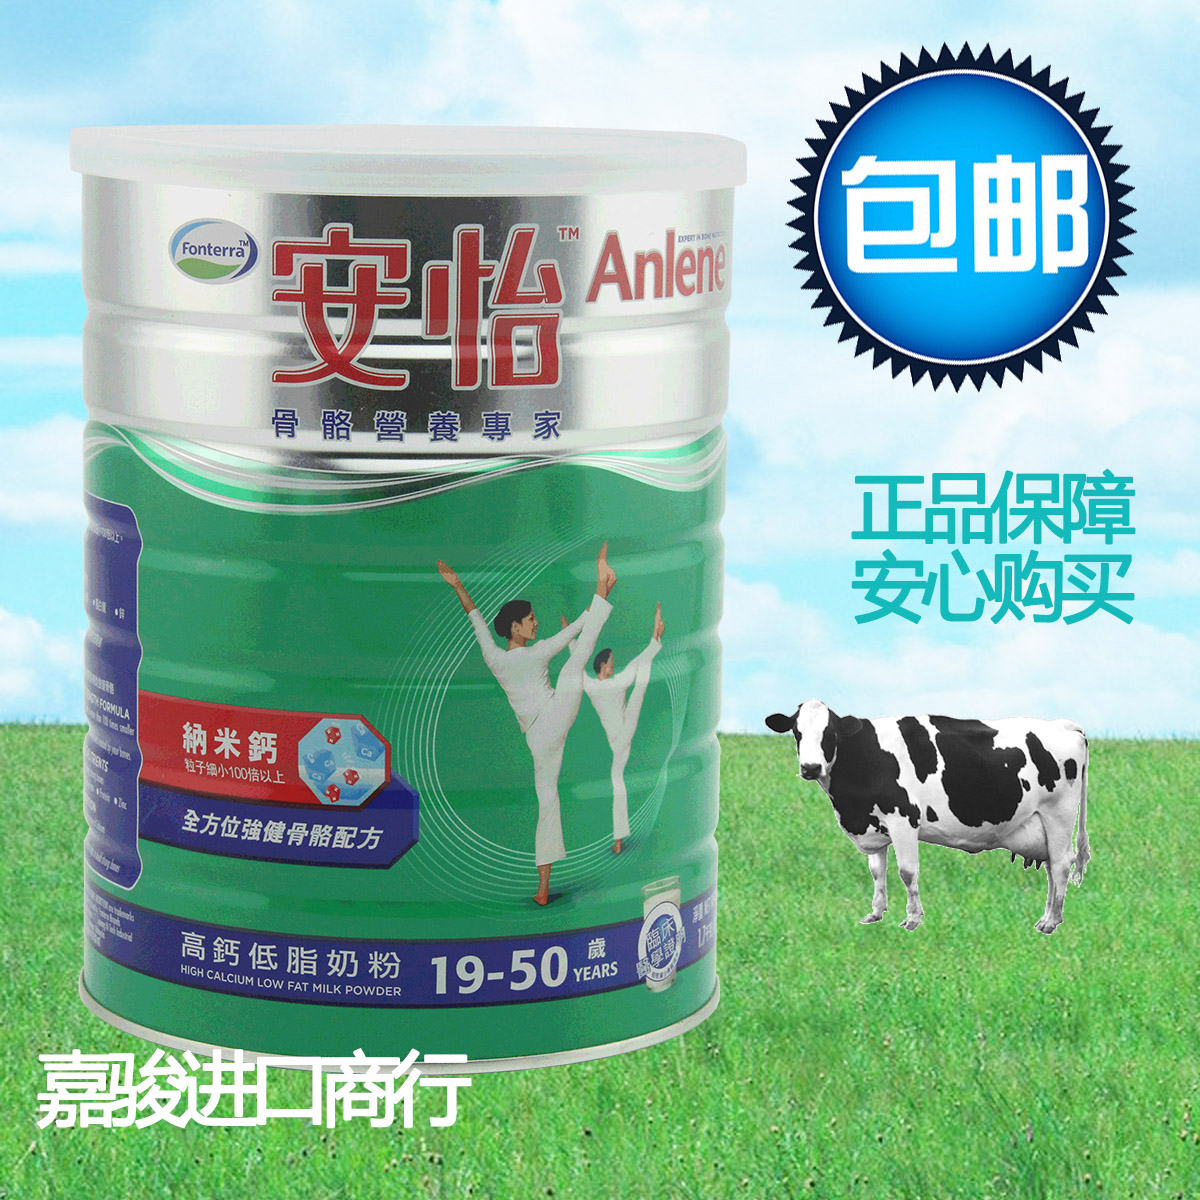 香港代购正品纽西兰进口安怡高钙低脂奶粉19-50岁1700克特价